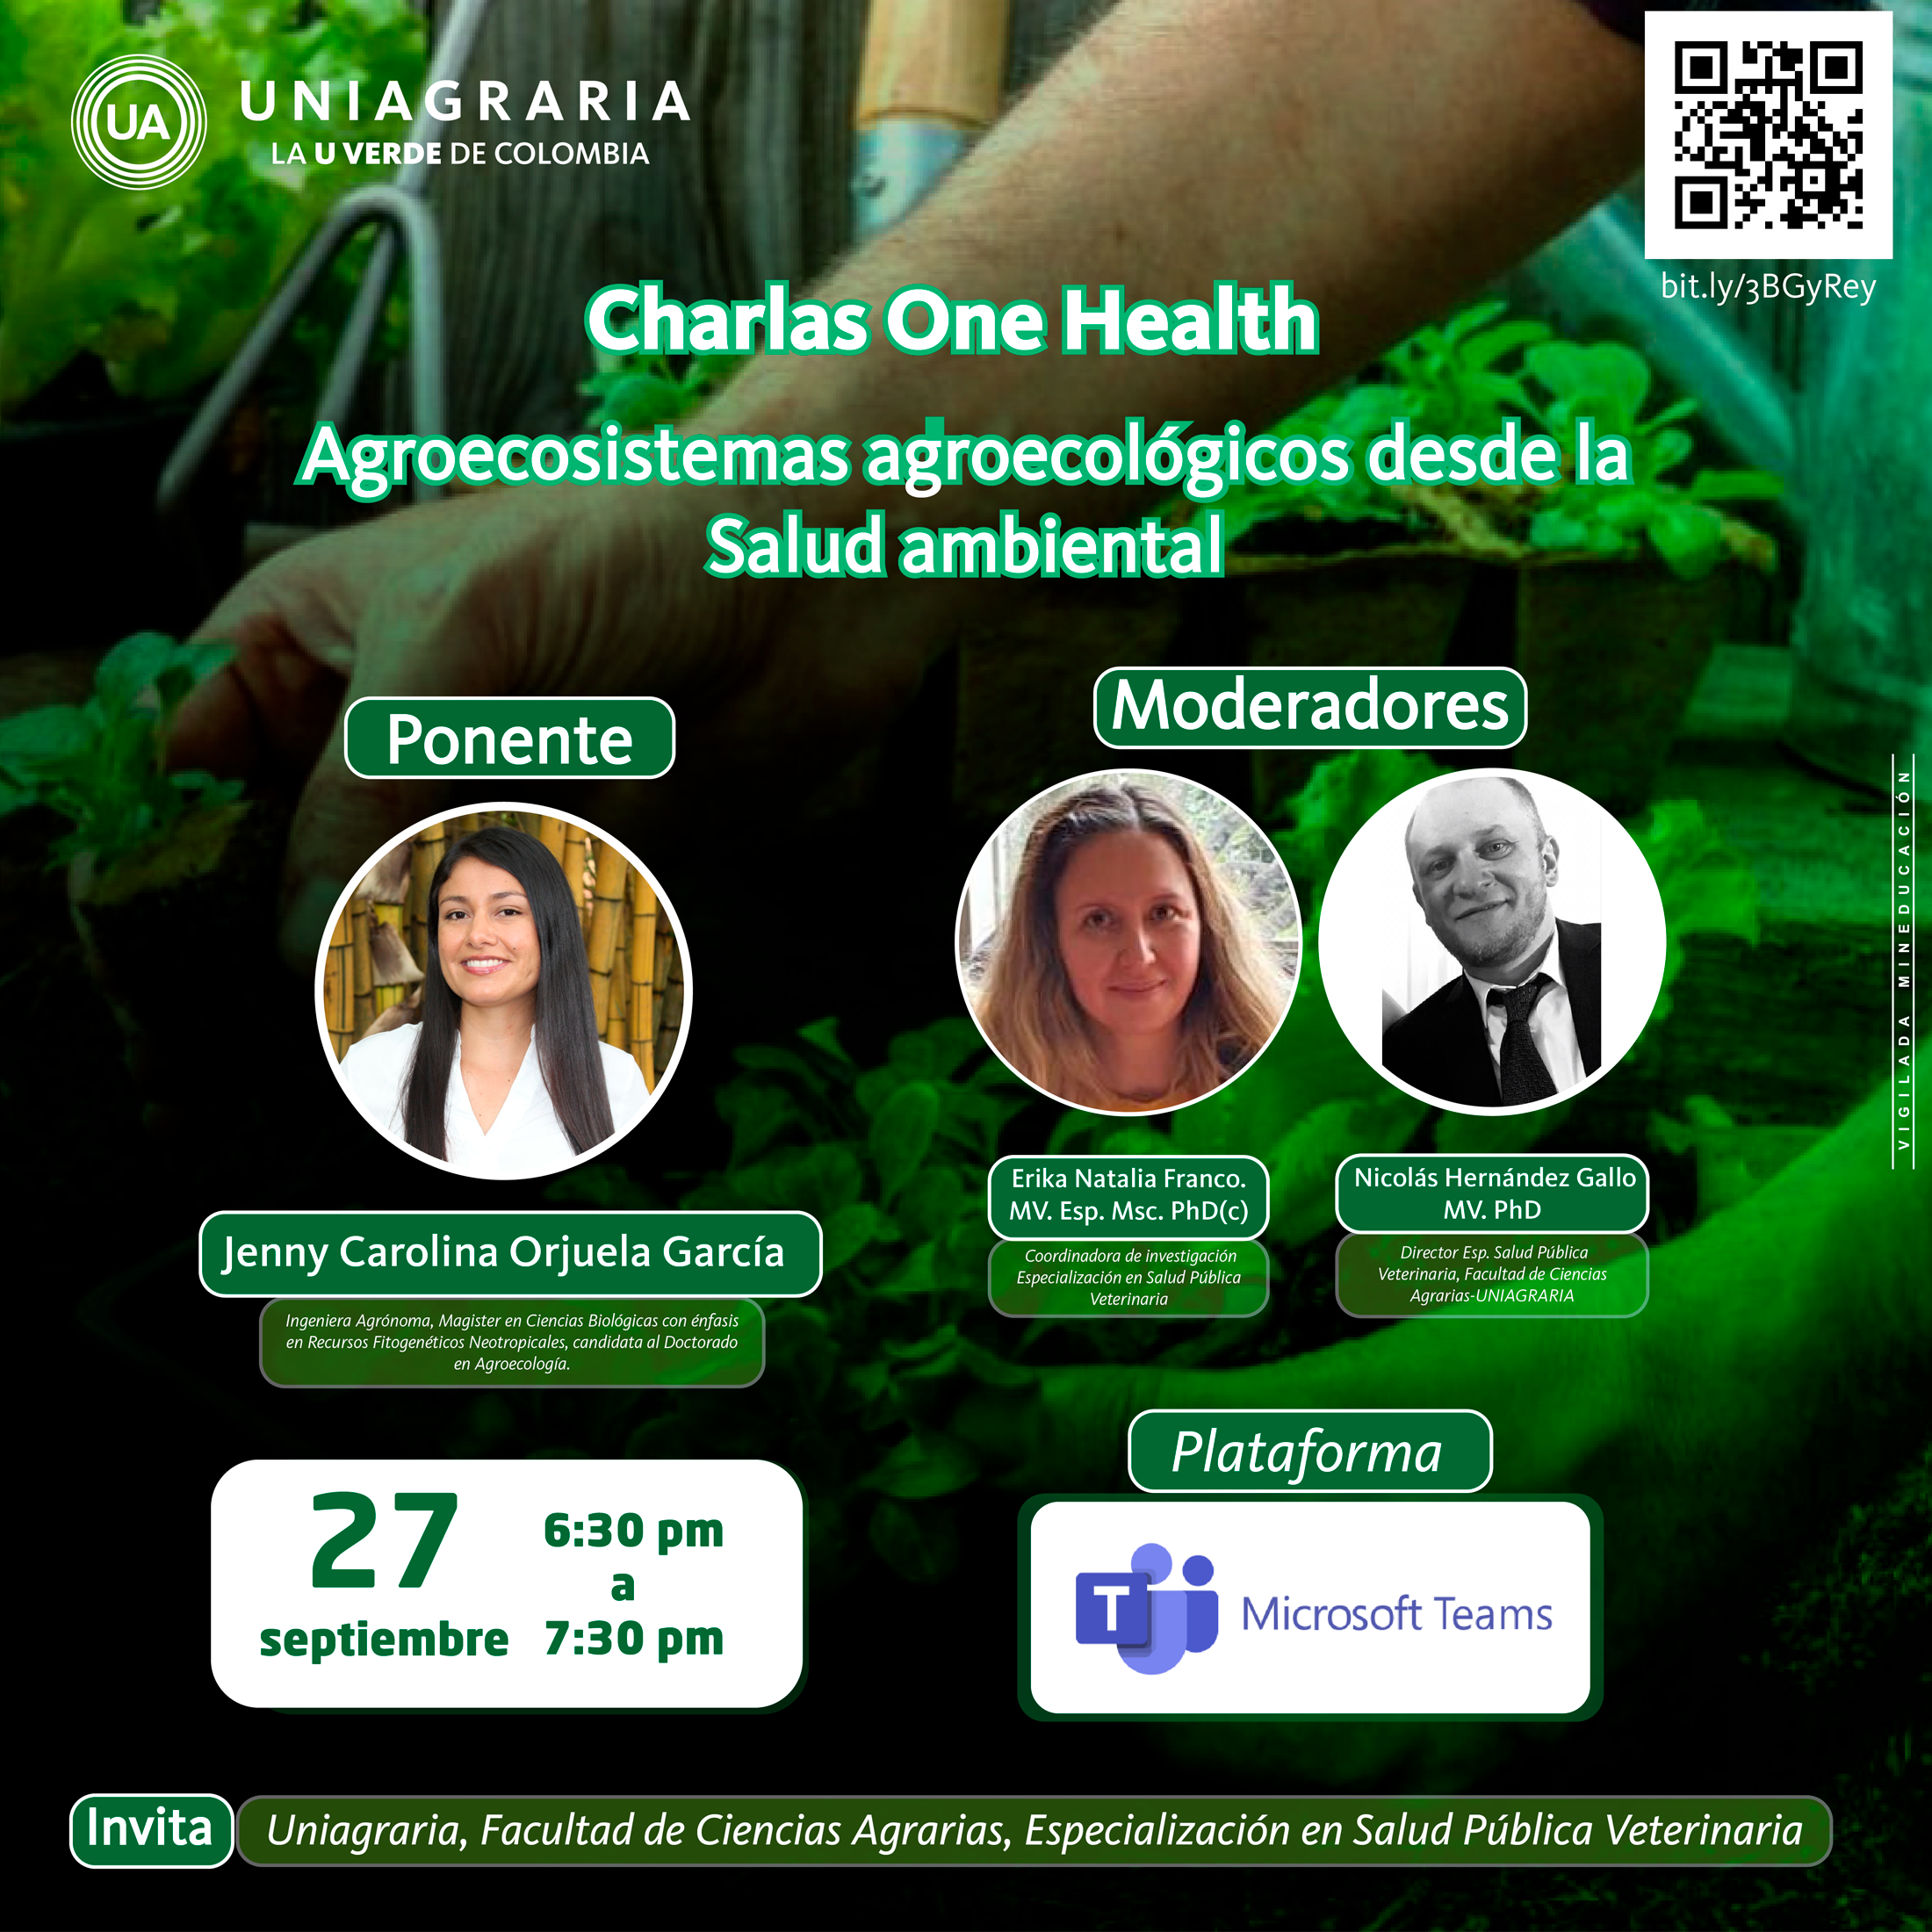 Charlas One Health: Agroecosistemas agroecológicos desde la salud ambiental